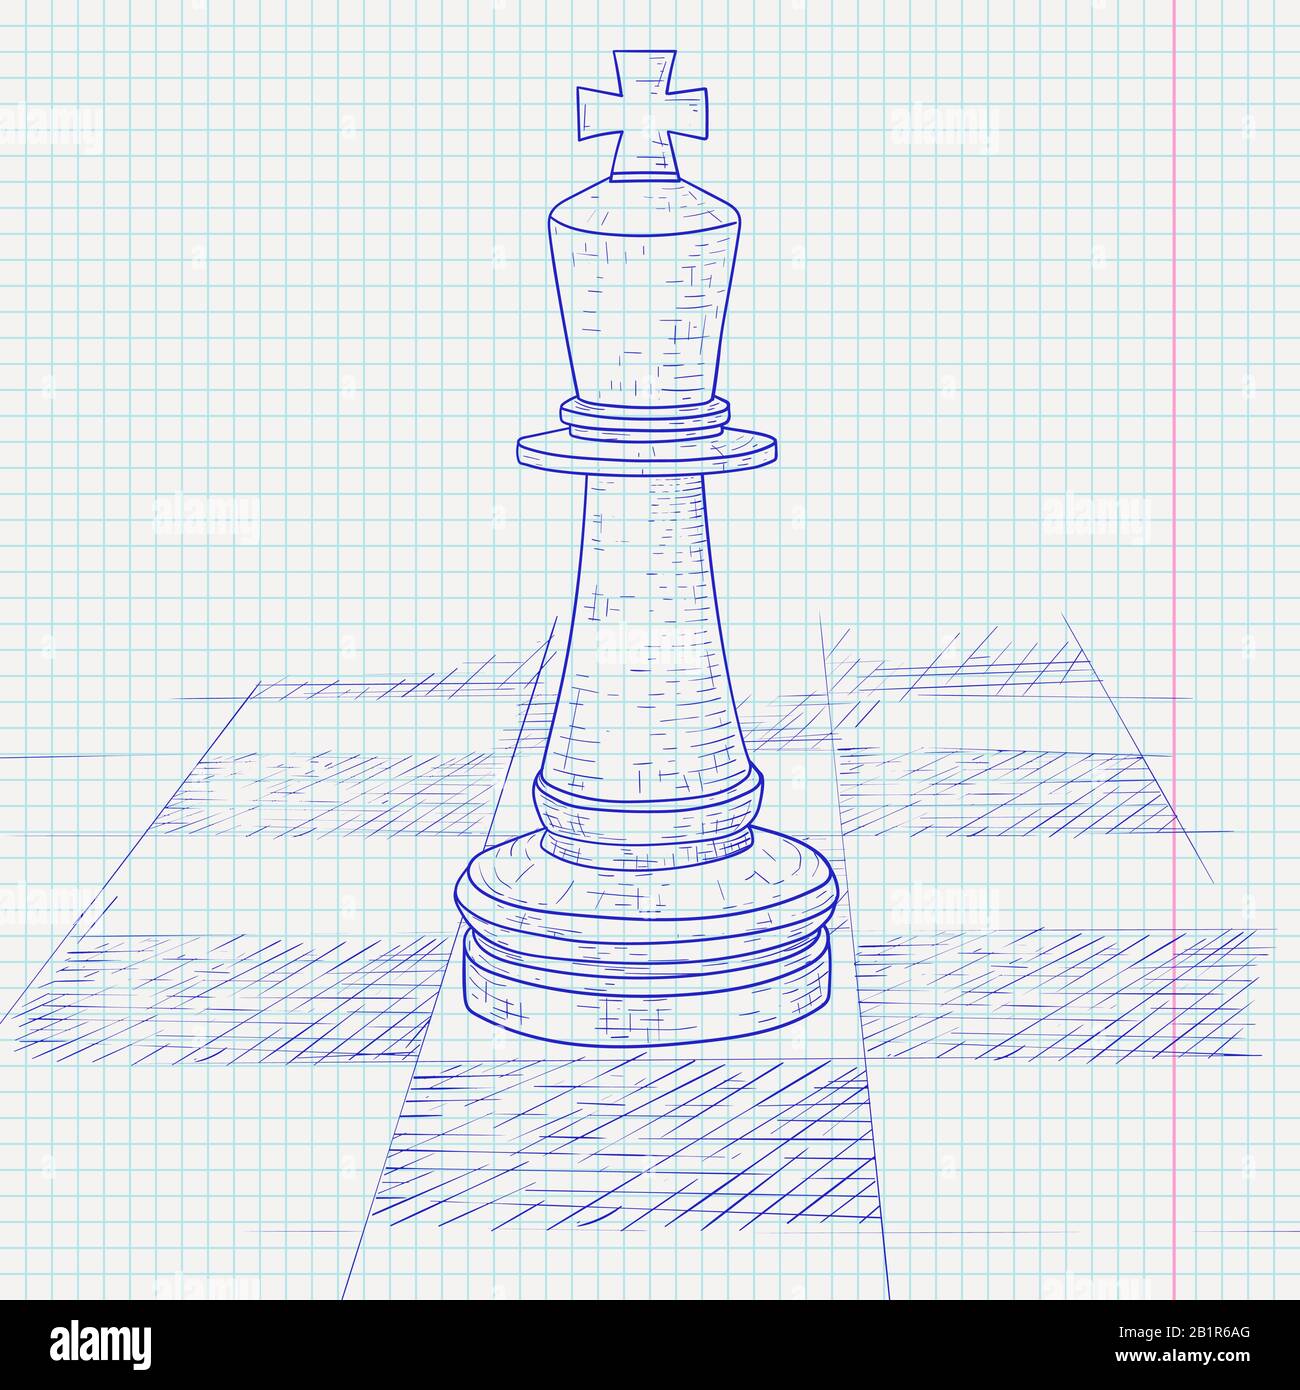 Das Schachstück des Königs auf einem Schachbrett. Handgezeichnete Skizze auf liniertem Papierhintergrund Stock Vektor